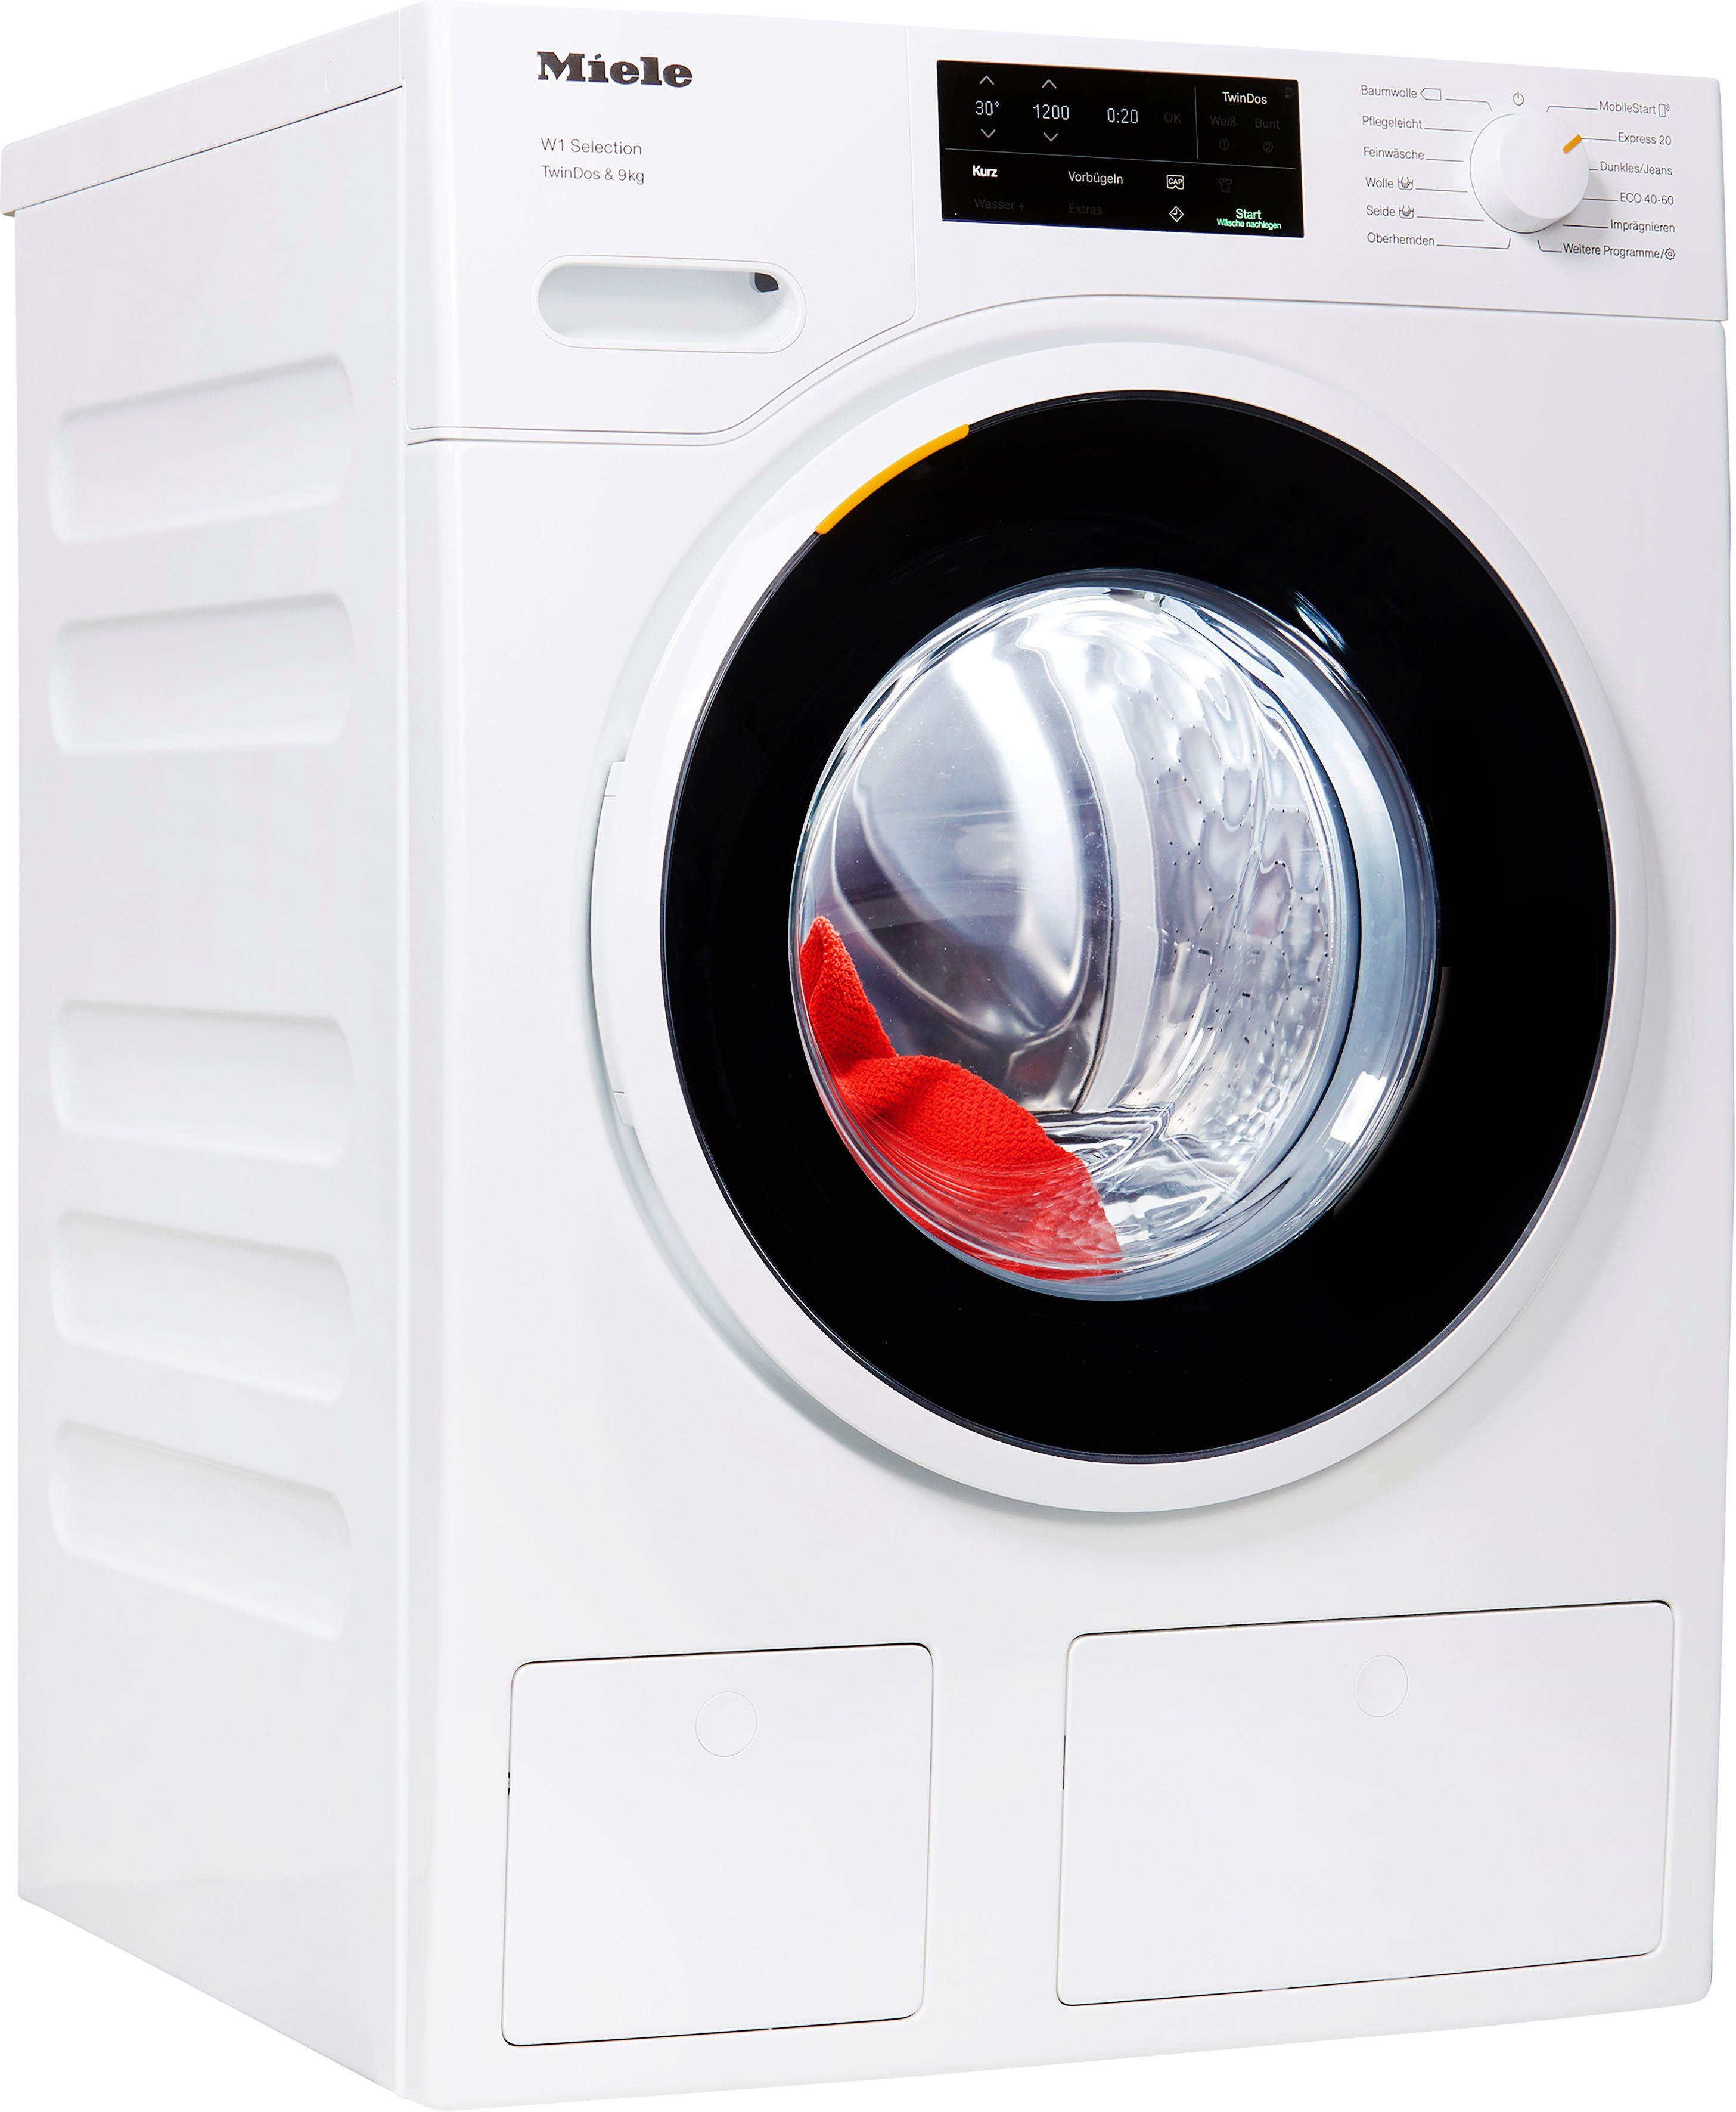 Miele Waschmaschine, CapDosing - Dosieren Sie Spezialwaschmittel und  Weichspüler einfach mit Portionskapseln. online kaufen | OTTO